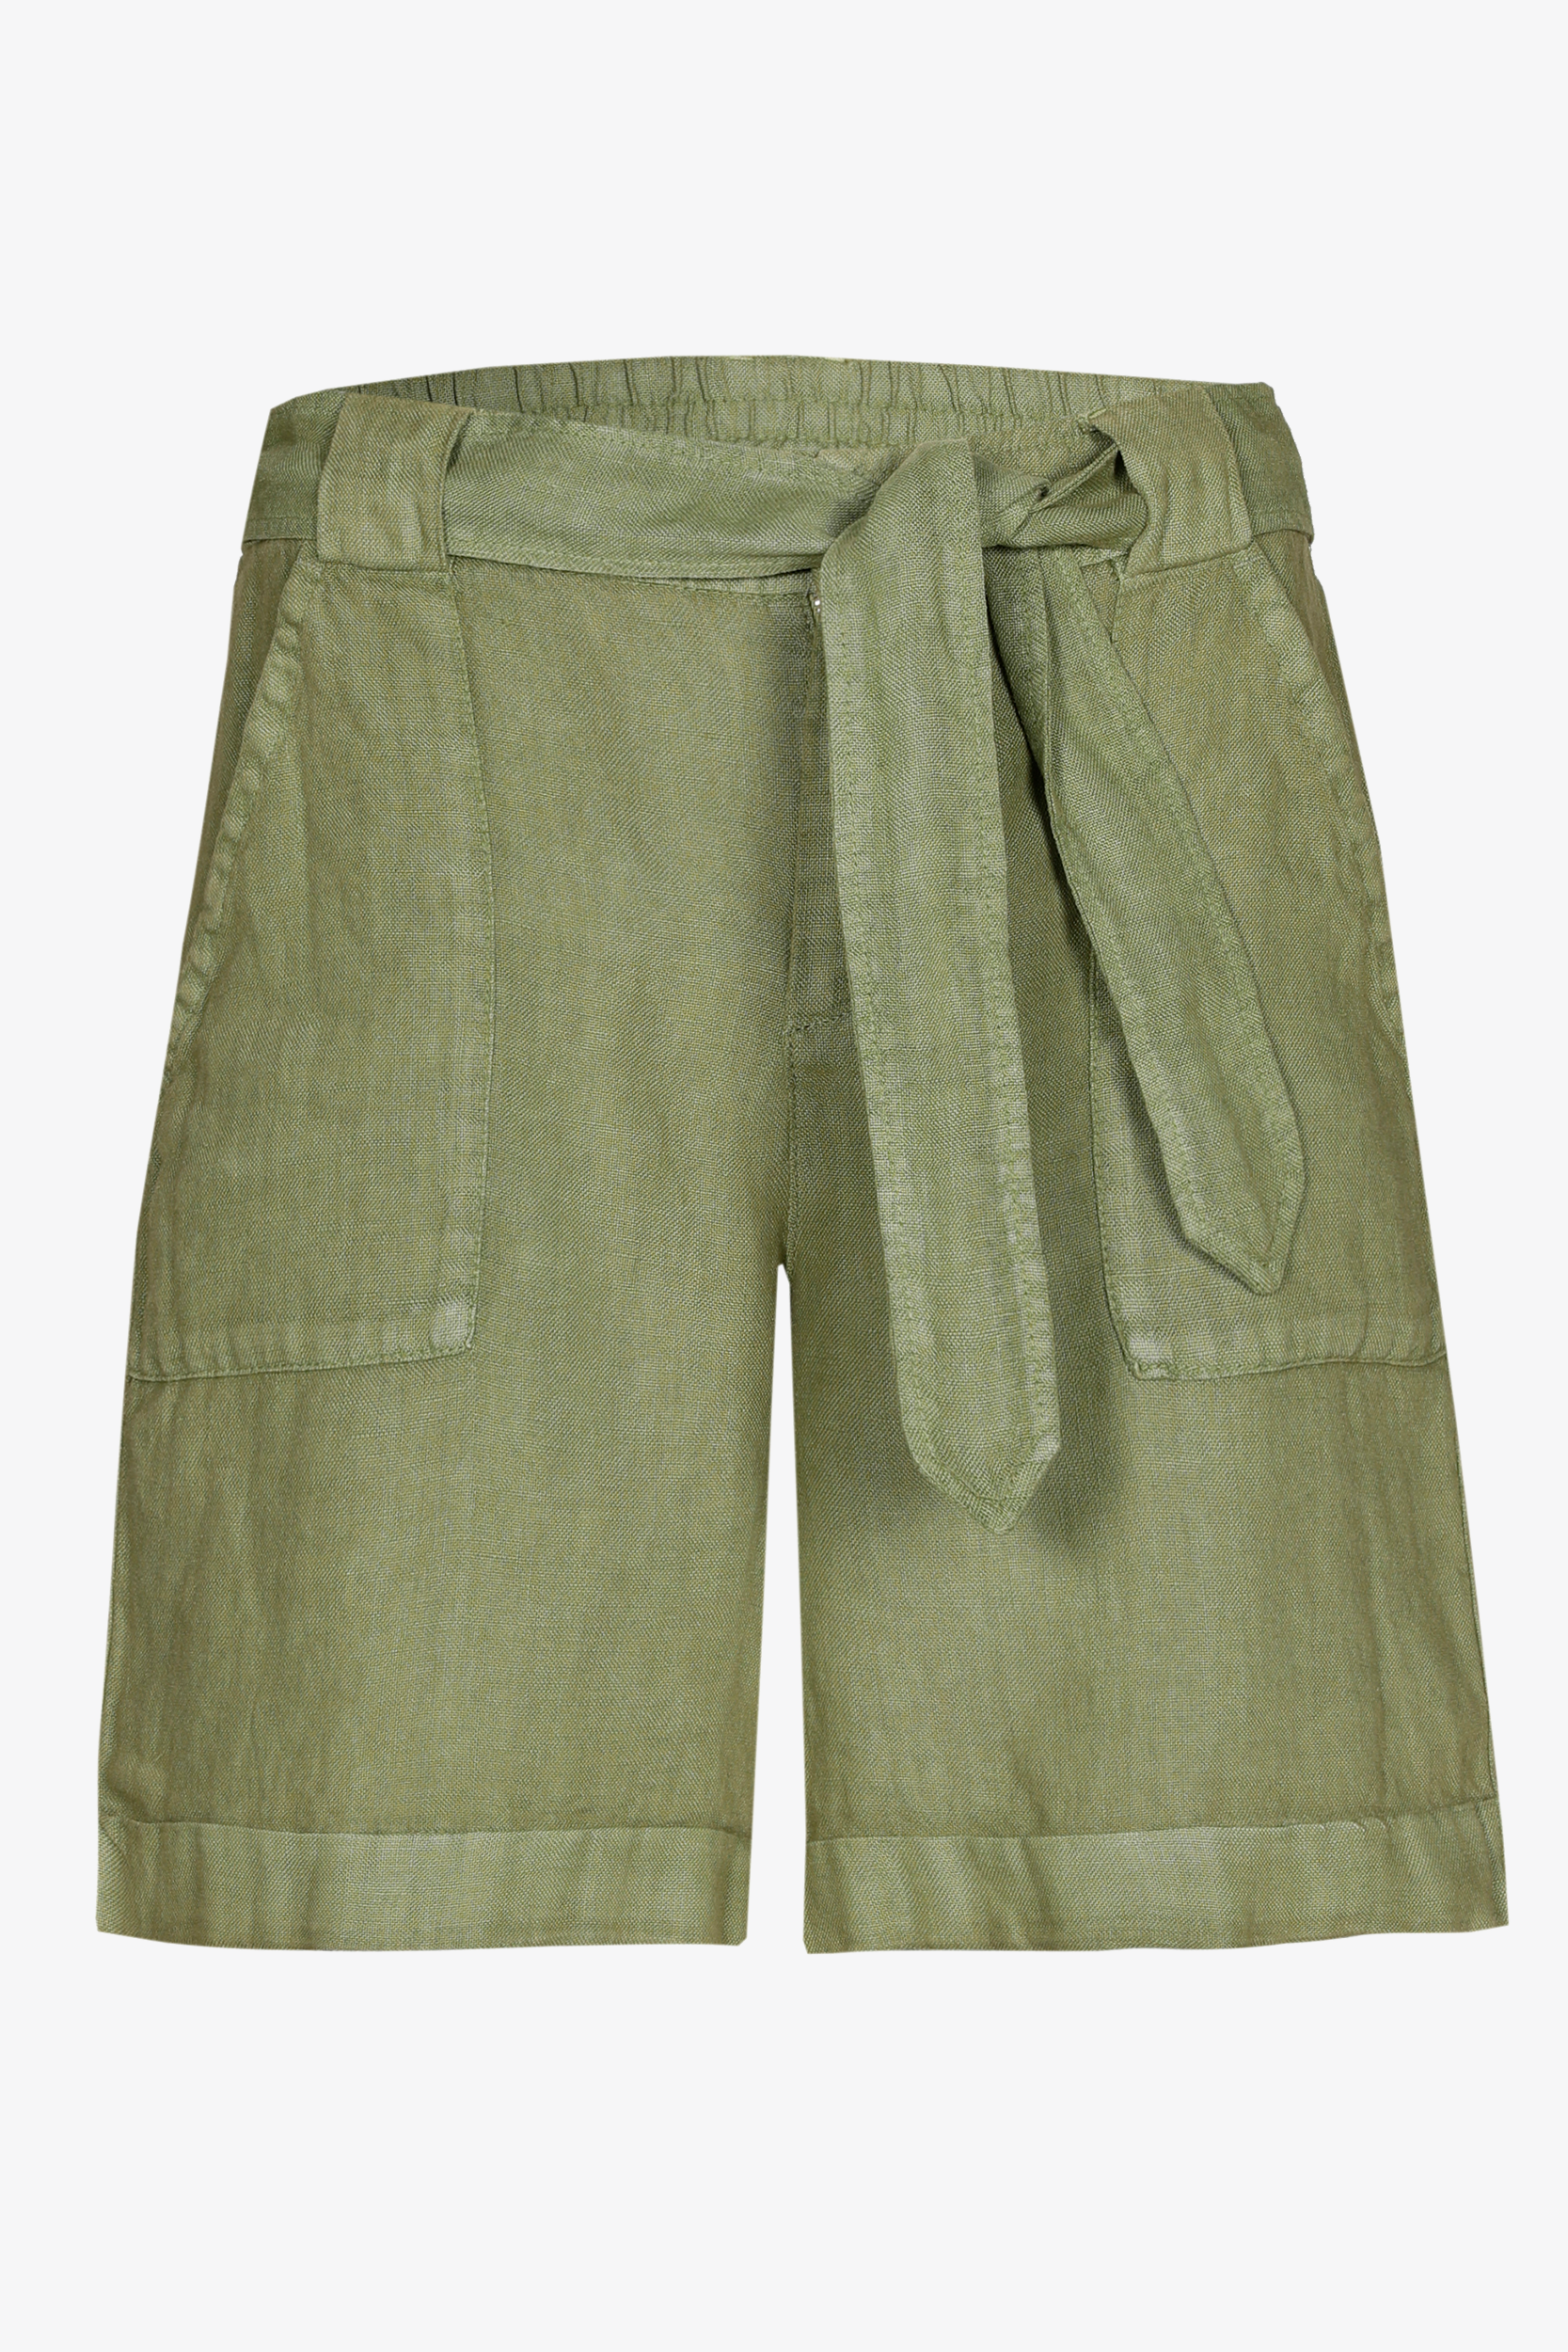 Linen summer shorts